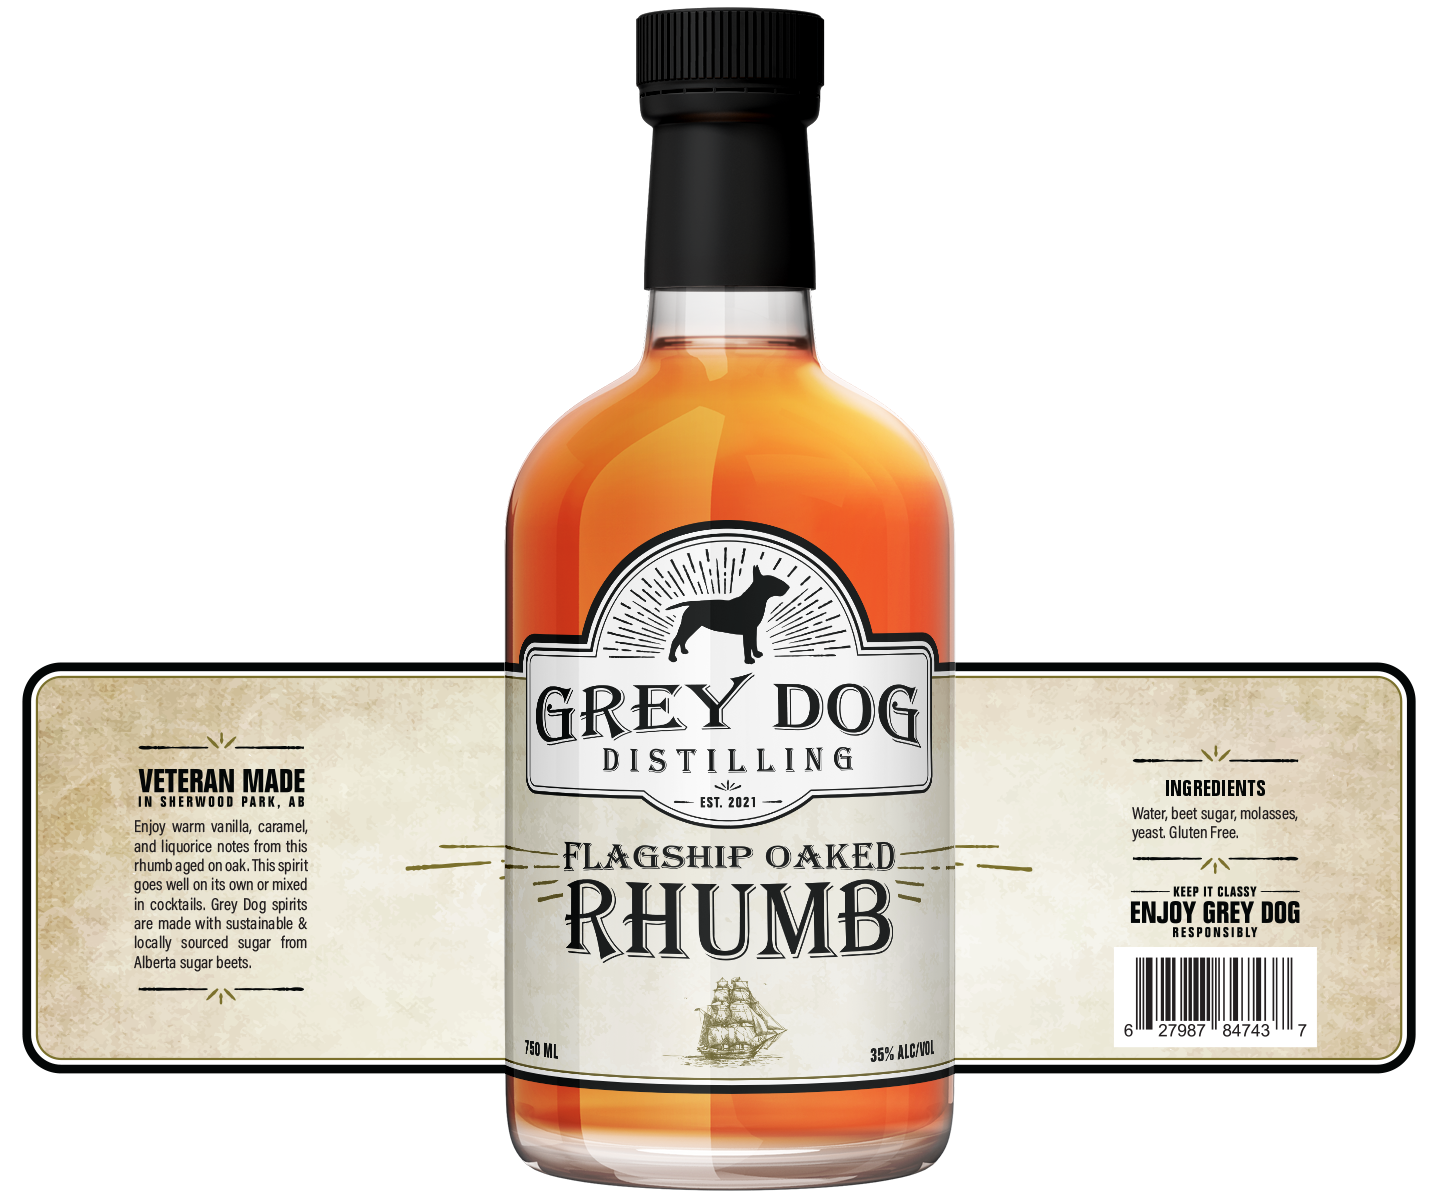 Grey Dog Distilling Flagship Oaked Rhumb Label Design